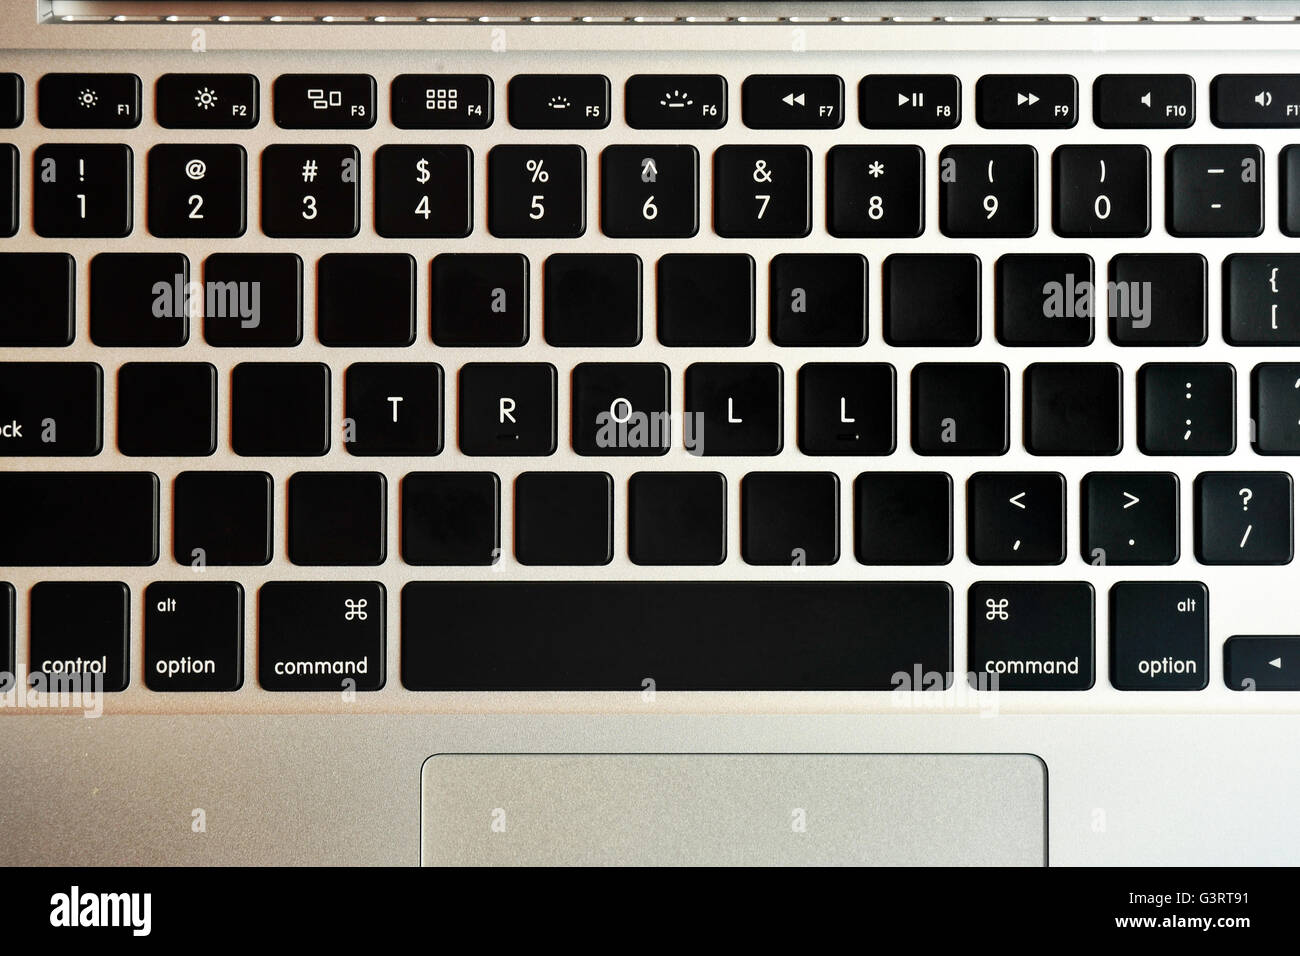 Troll written on the keyboard of a MacBook Pro. Stock Photo